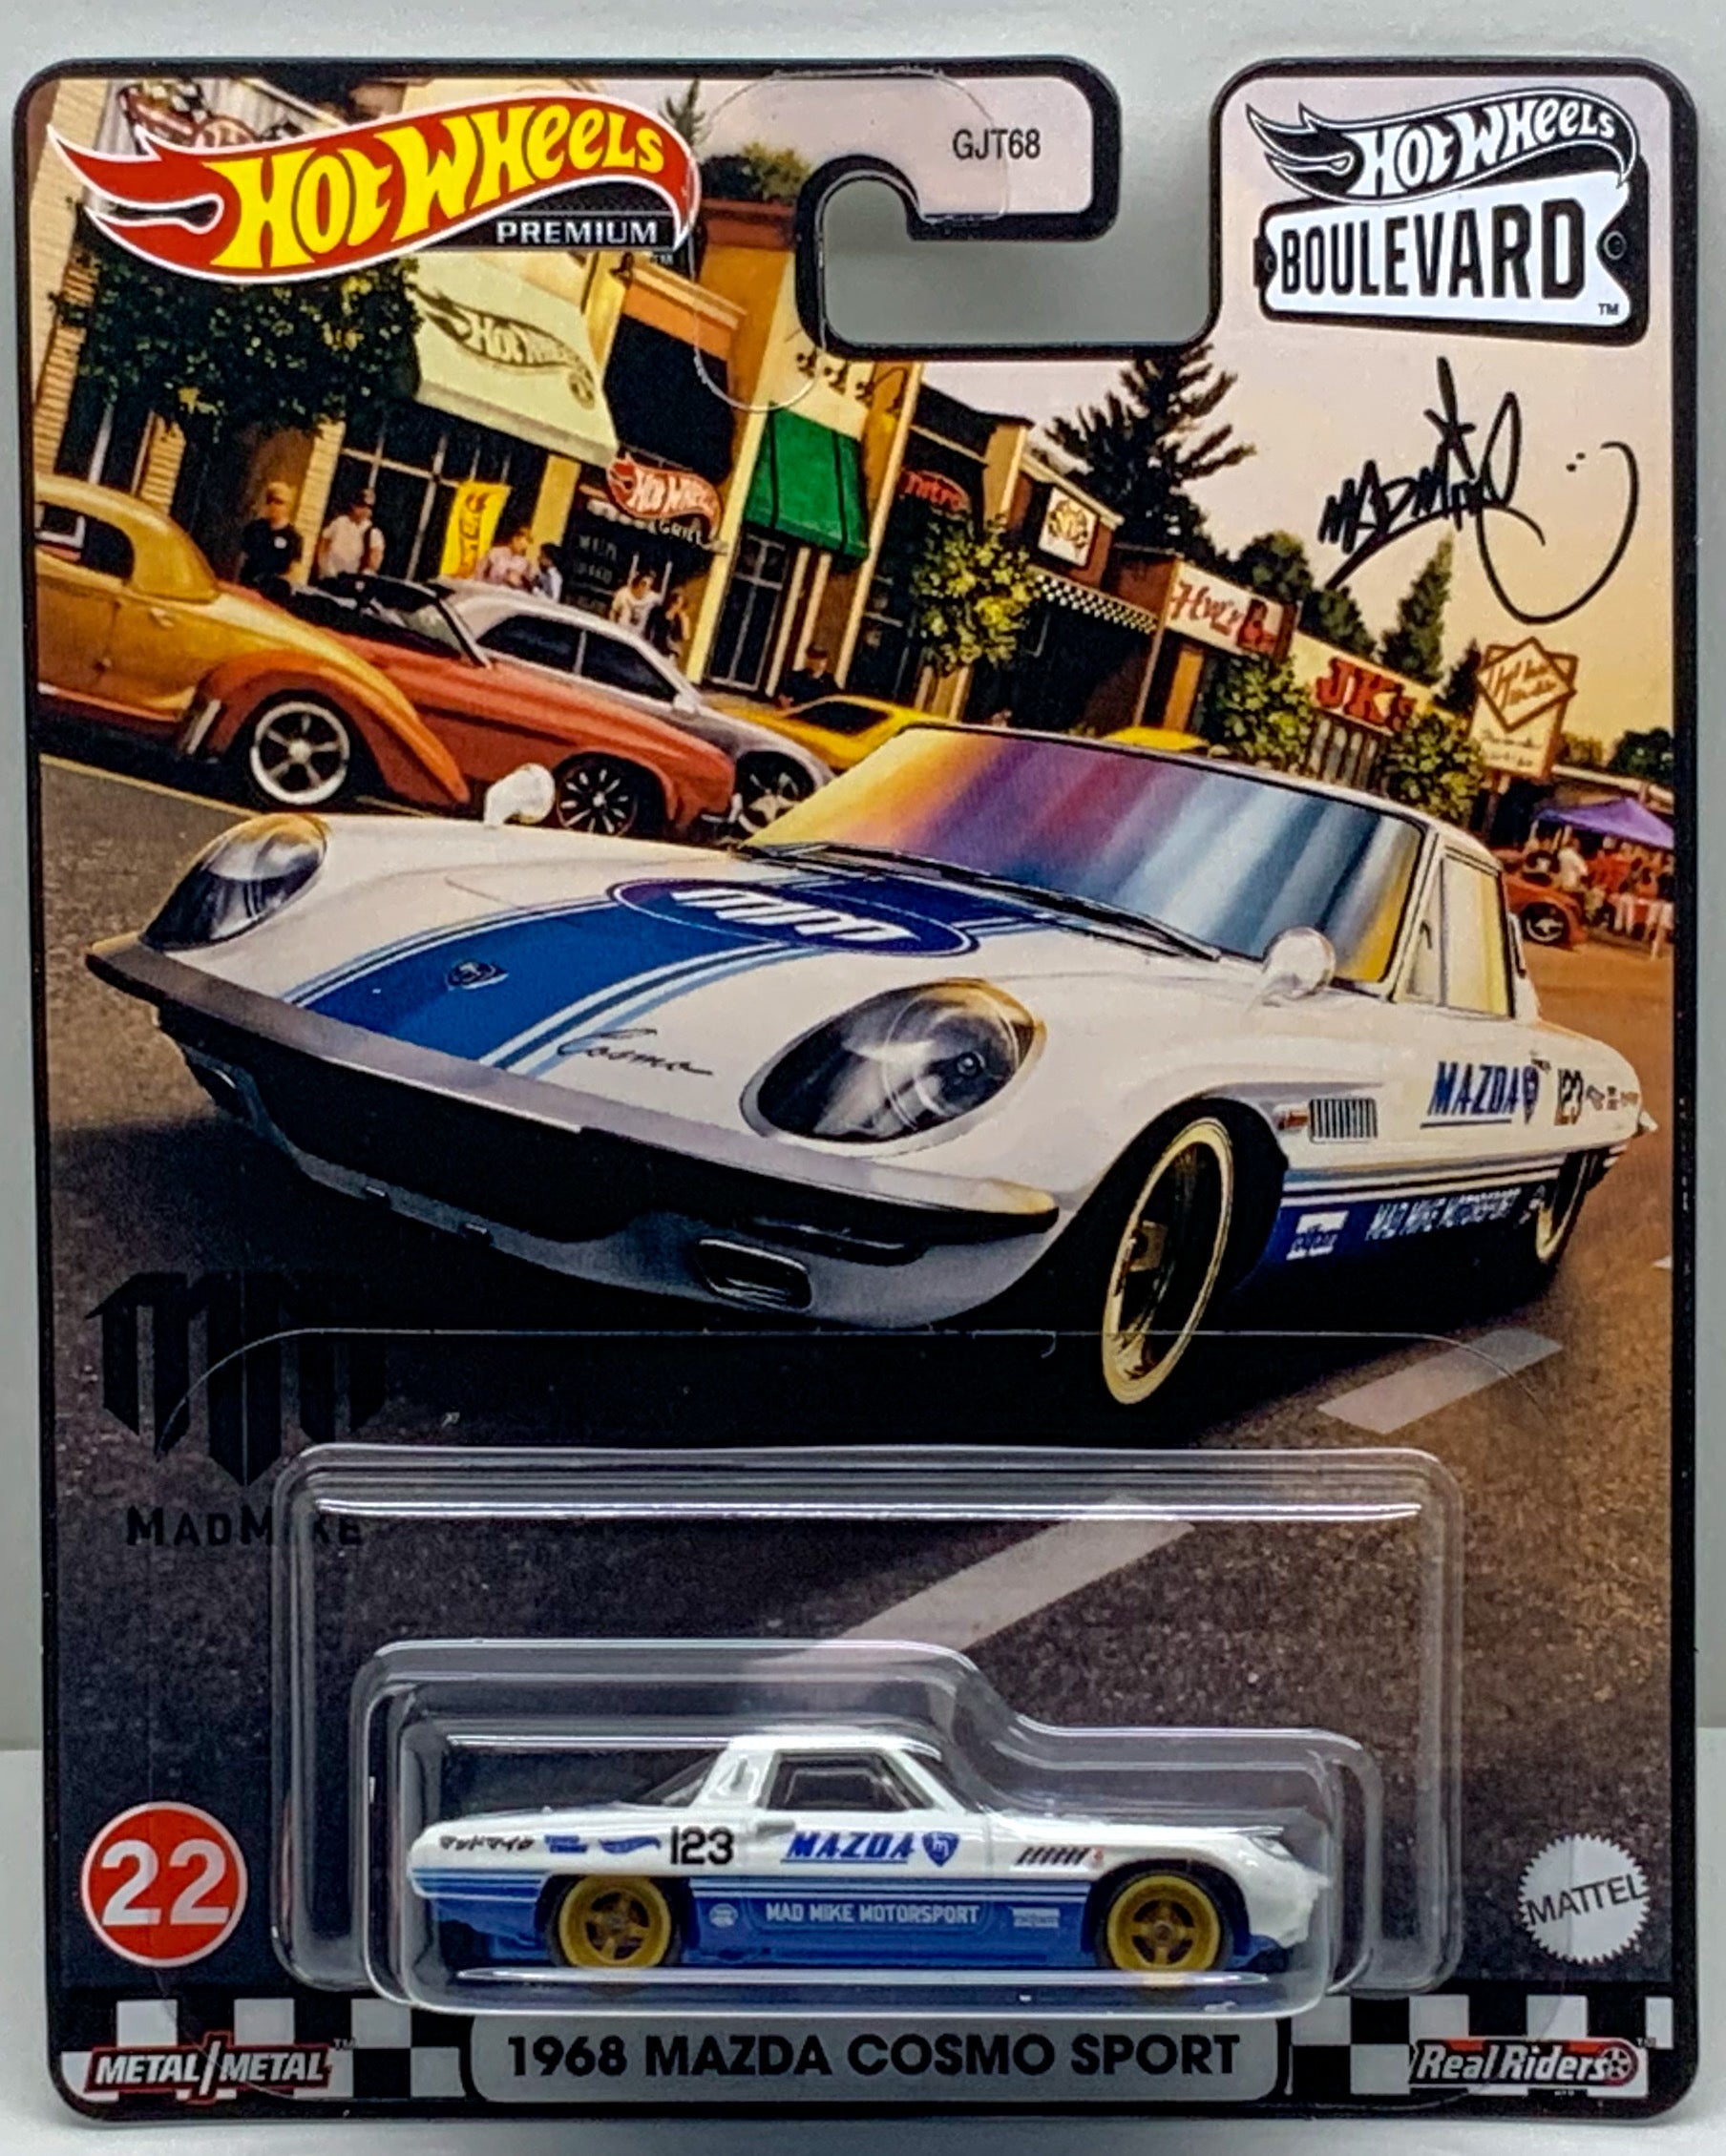 Buy at Tatoy Hot Wheels Boulevard 1968 Mazda Cosmo Sport number 22 Premium Real Riders Metal Mattel GJT68